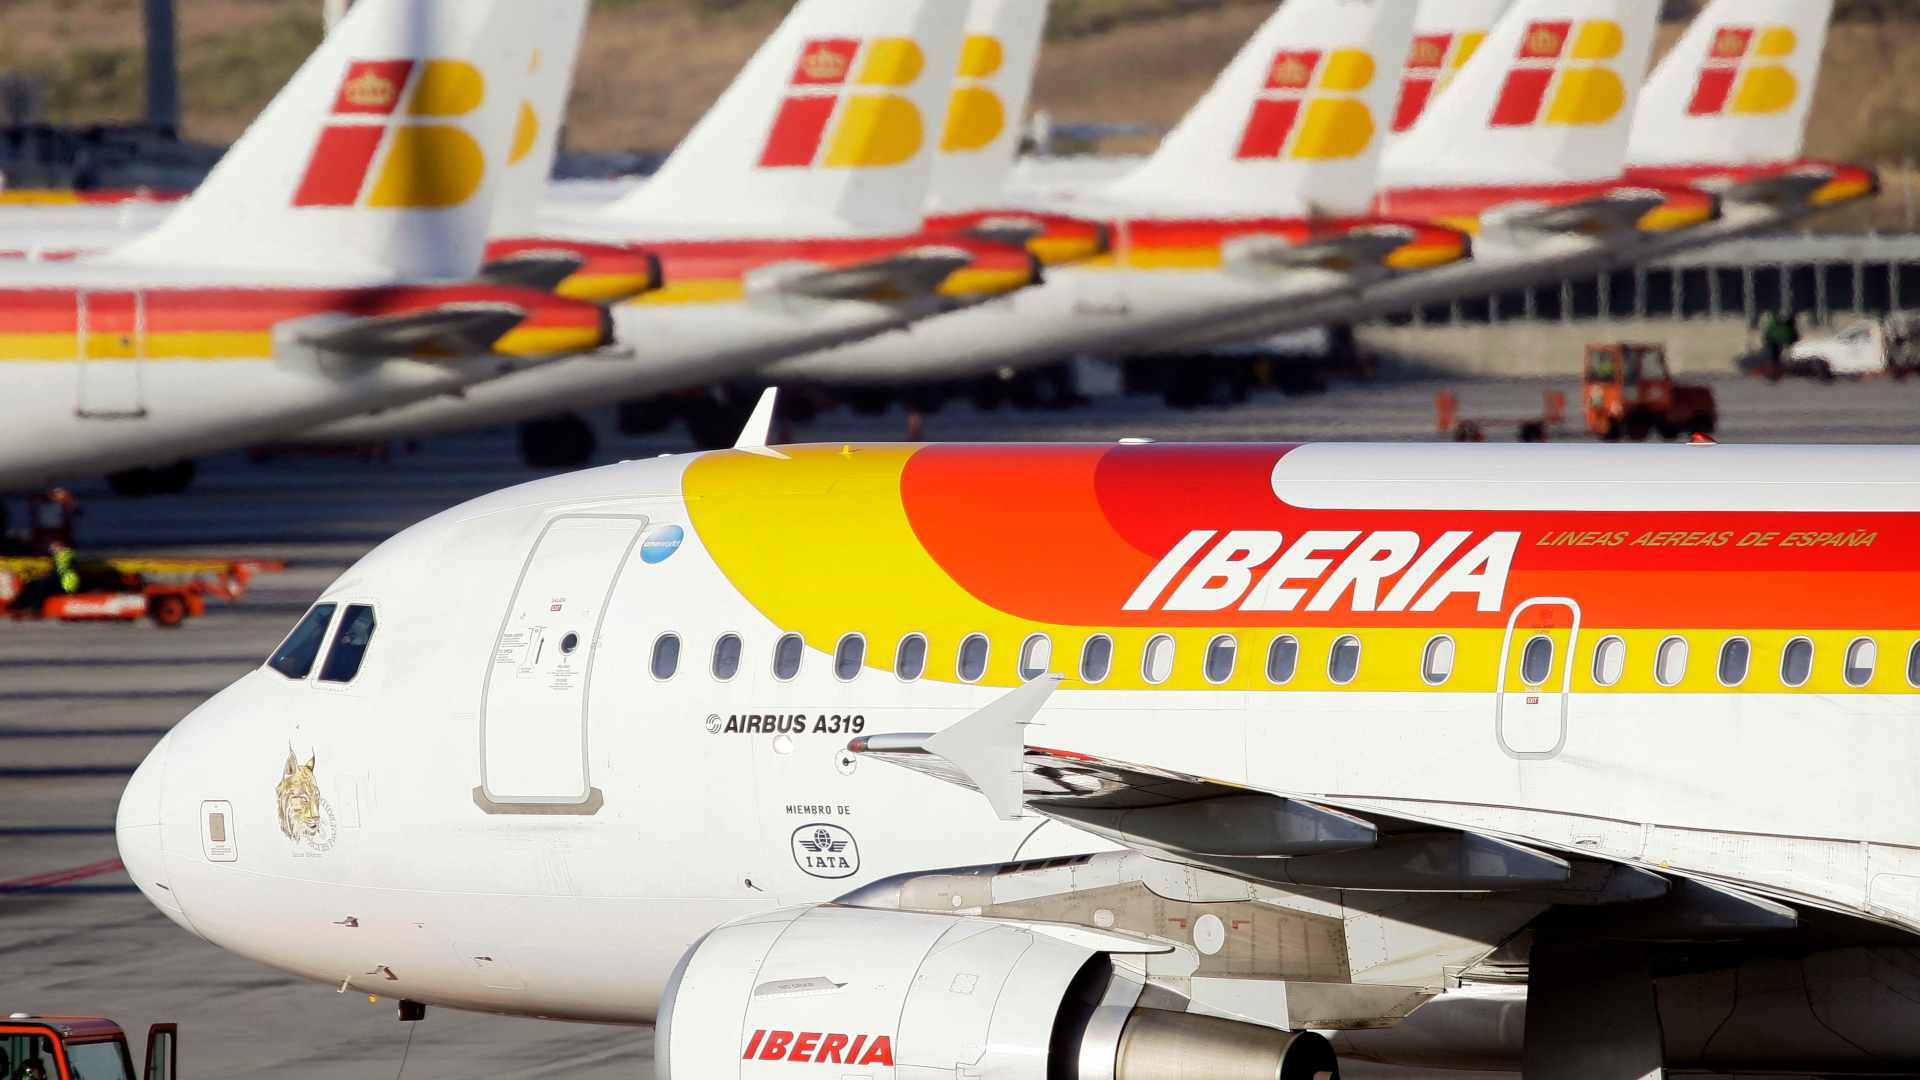 El presidente de Iberia aterriza en La Habana para reafirmar su apuesta por Cuba